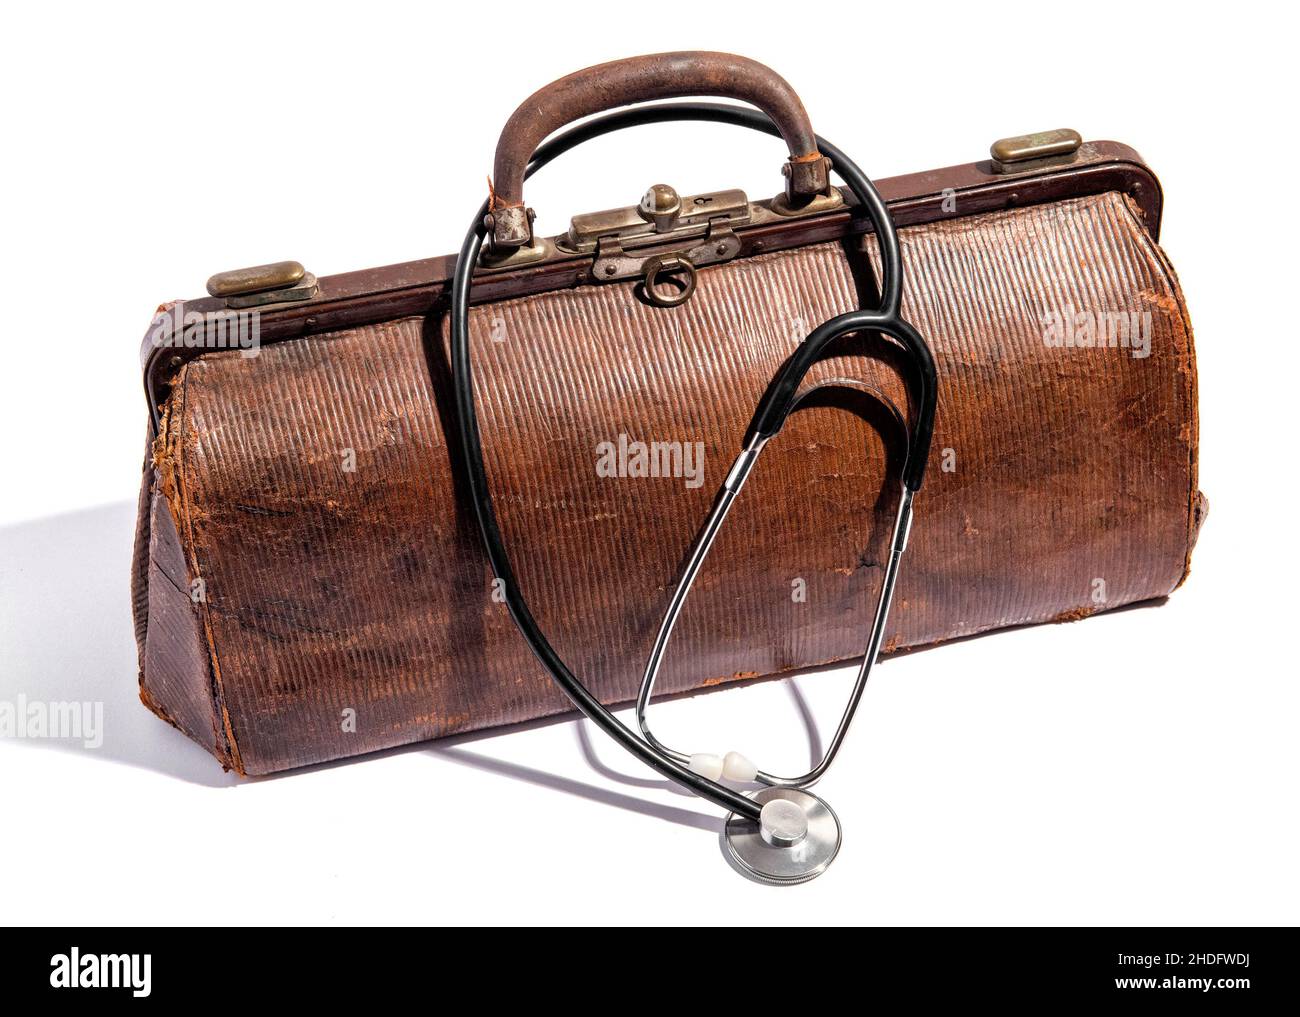 Hausbesuch, Arzttasche mit Stethoskop Stock-Foto